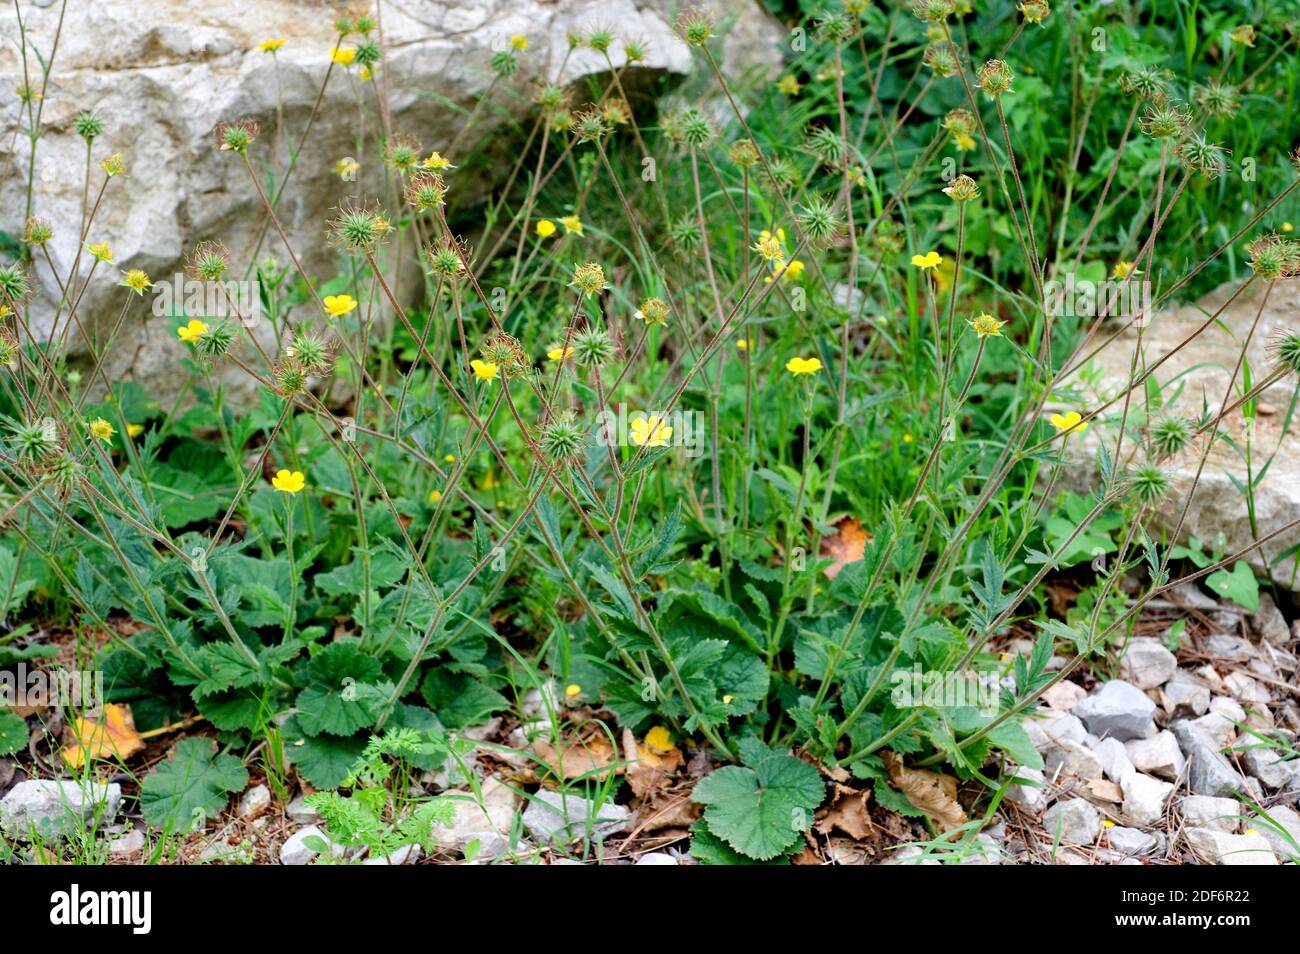 Avens (Geum sylvaticum) es una hierba perenne nativa de la Península Ibérica, el sur de Francia y el norte de África. Foto de stock